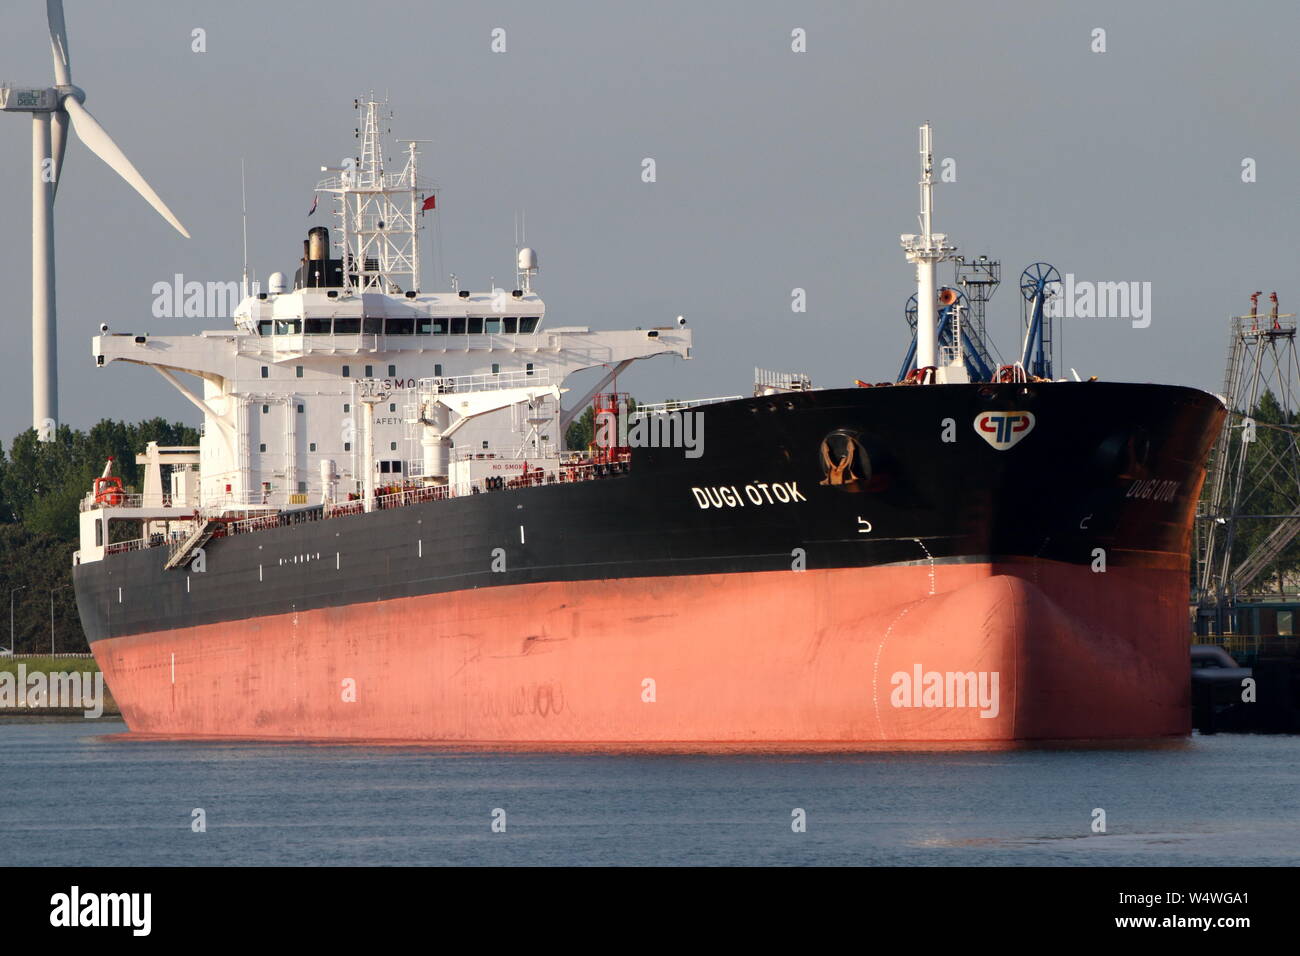 La nave cisterna di Dugi Otok scaricate il 22 maggio 2019 nel porto di Rotterdam. Foto Stock